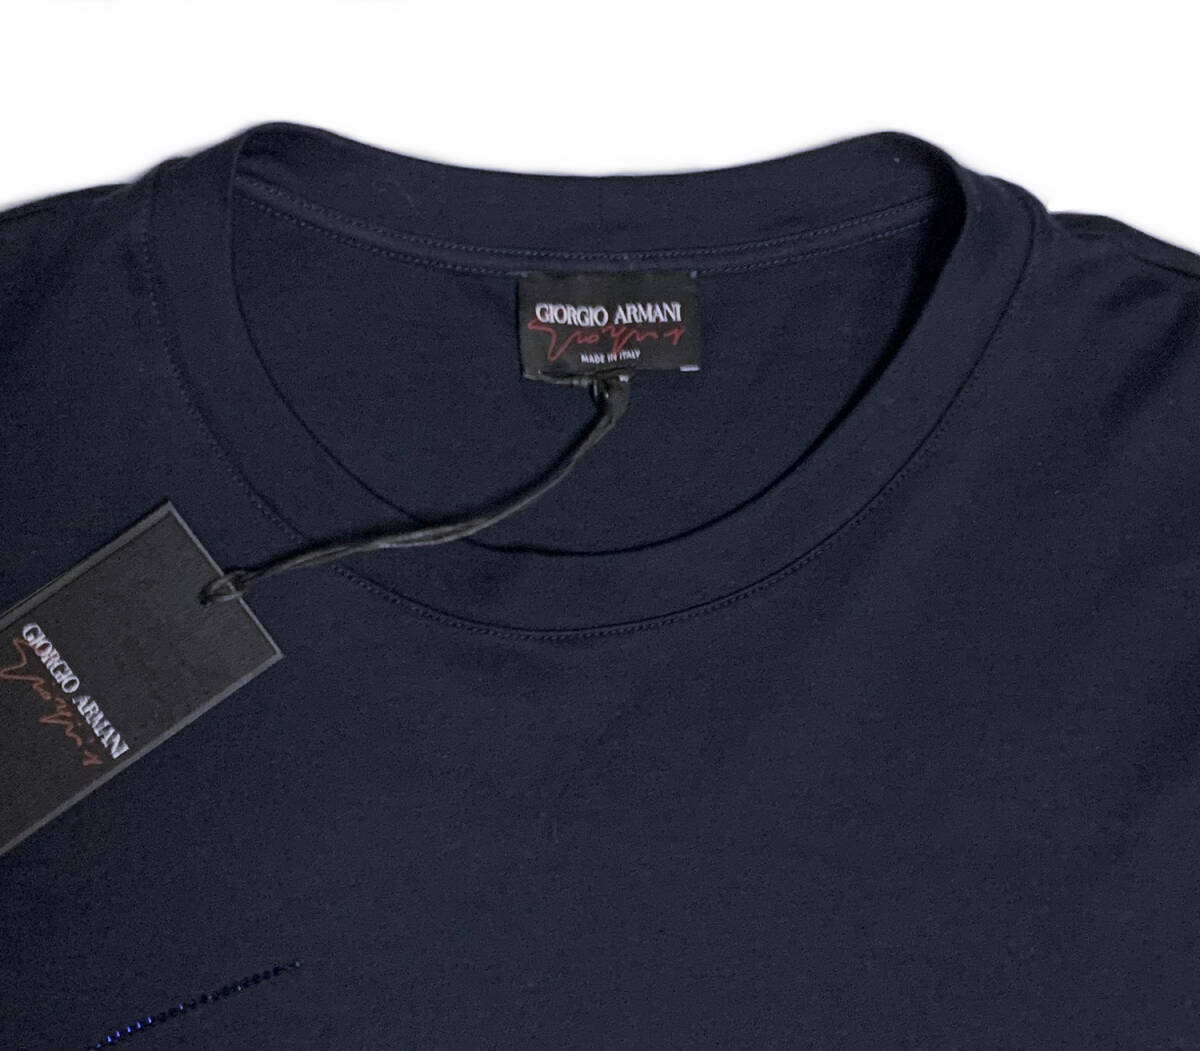 [48]joru geo Armani signature стразы ввод высокое качество мужской хлопок футболка Италия производства GIORGIO ARMANI